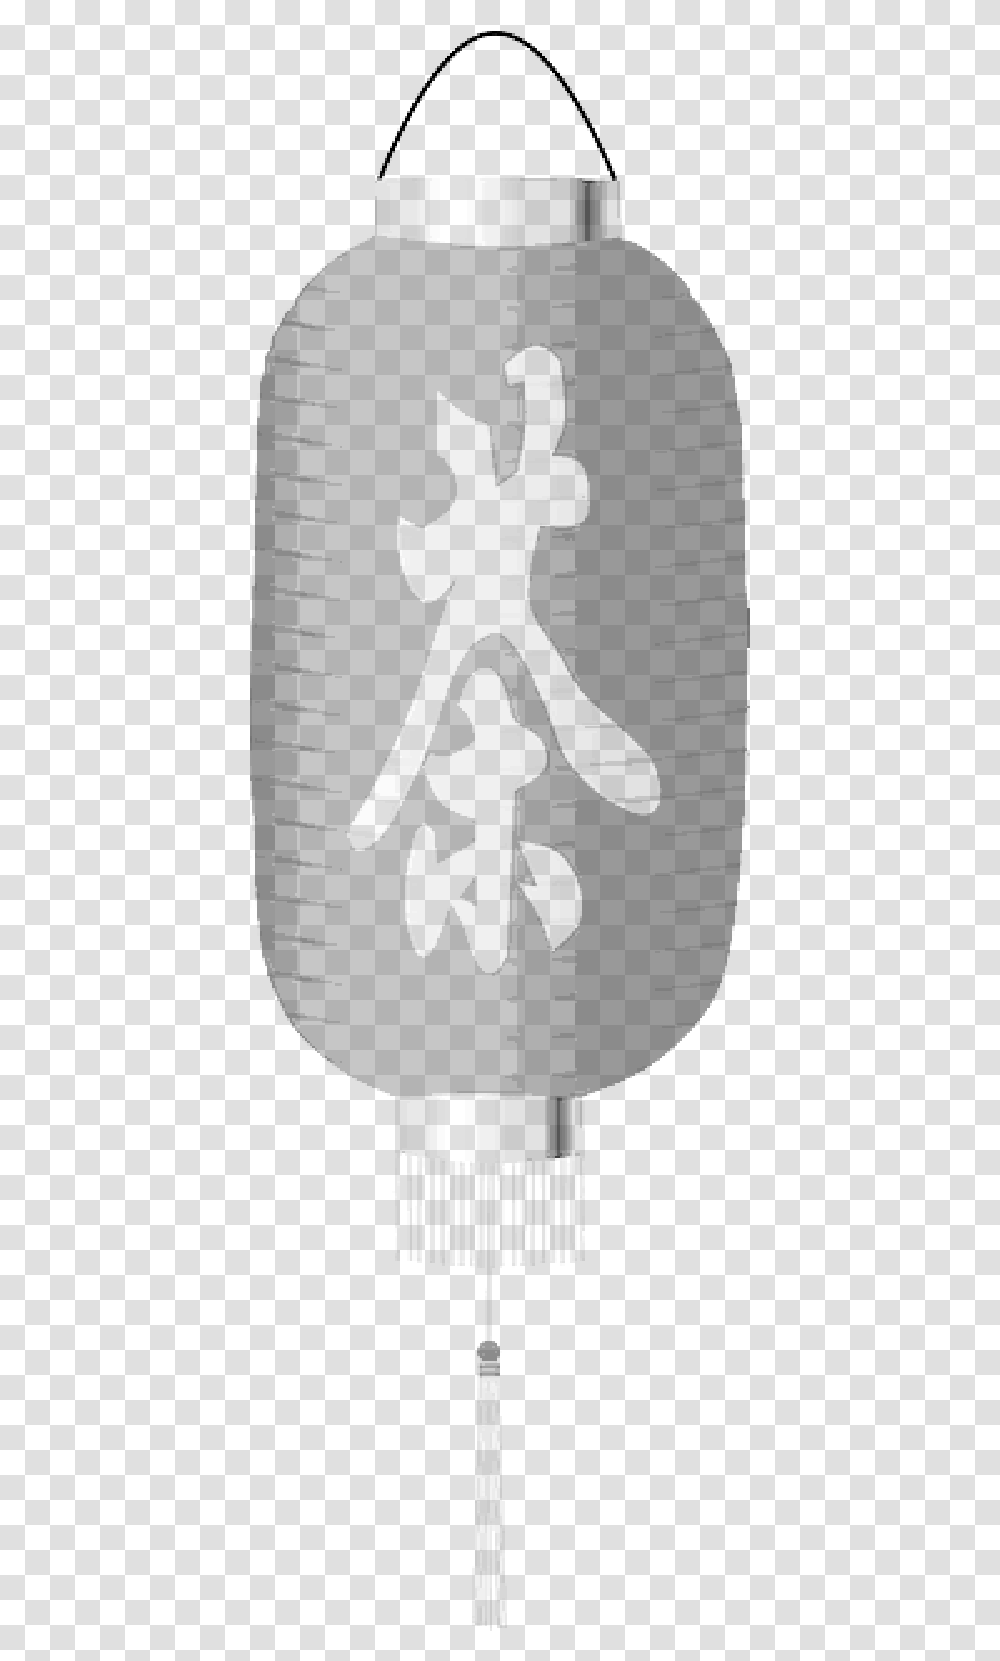 Lampion Chinese Lantern Japanese Lantern Chinese Lantern Clip Art, Armor, Stencil Transparent Png